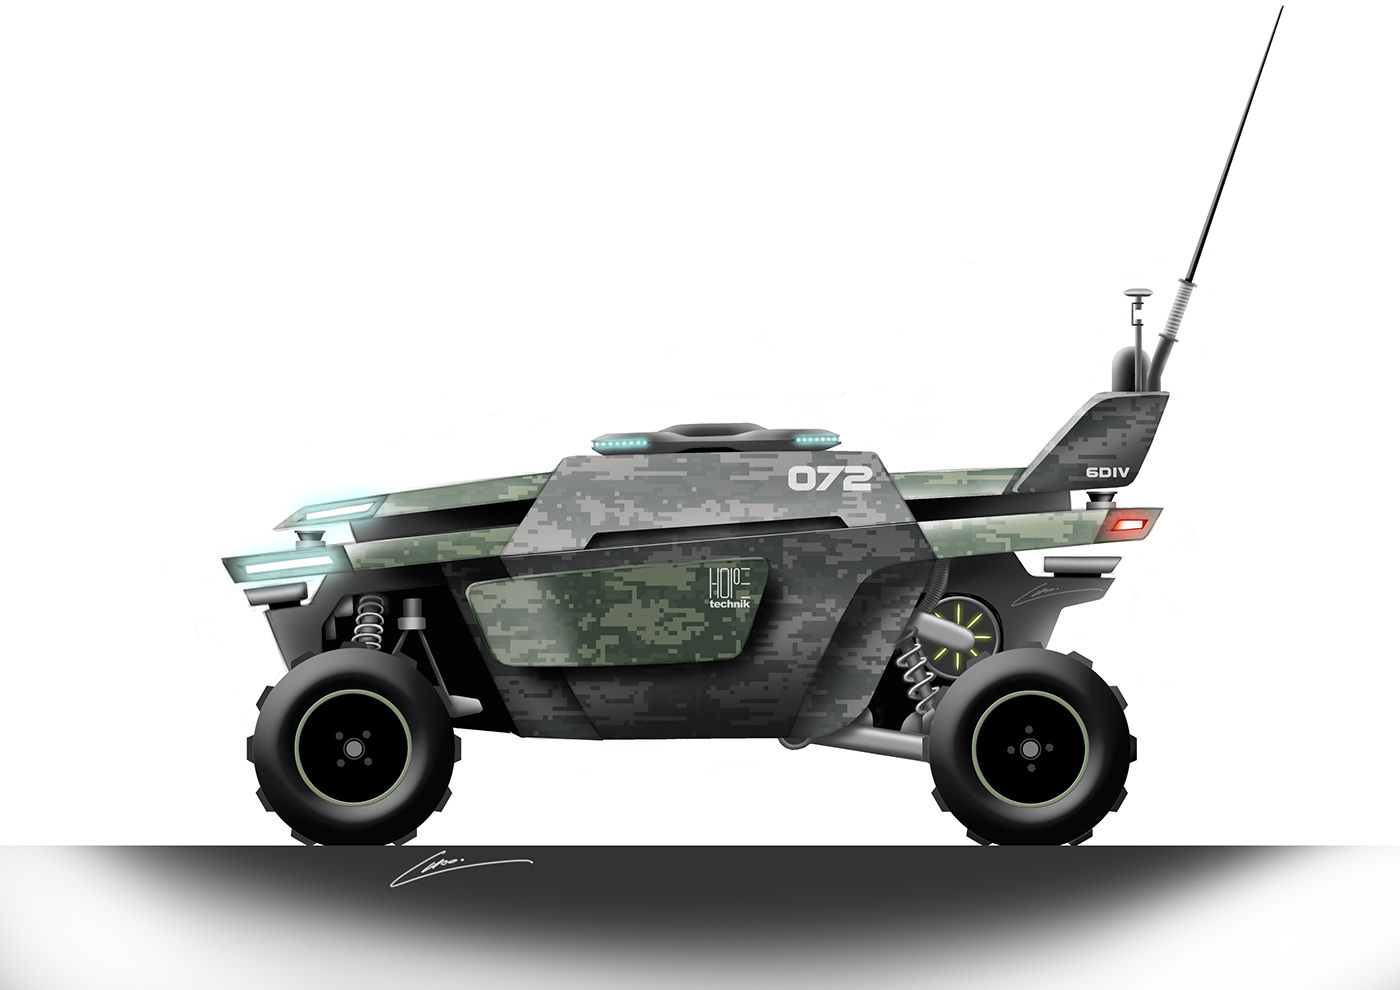 automobile Automotive design military design Military vehicle unmanned unmanned ground vehicle unmanned vehicle Vehicle